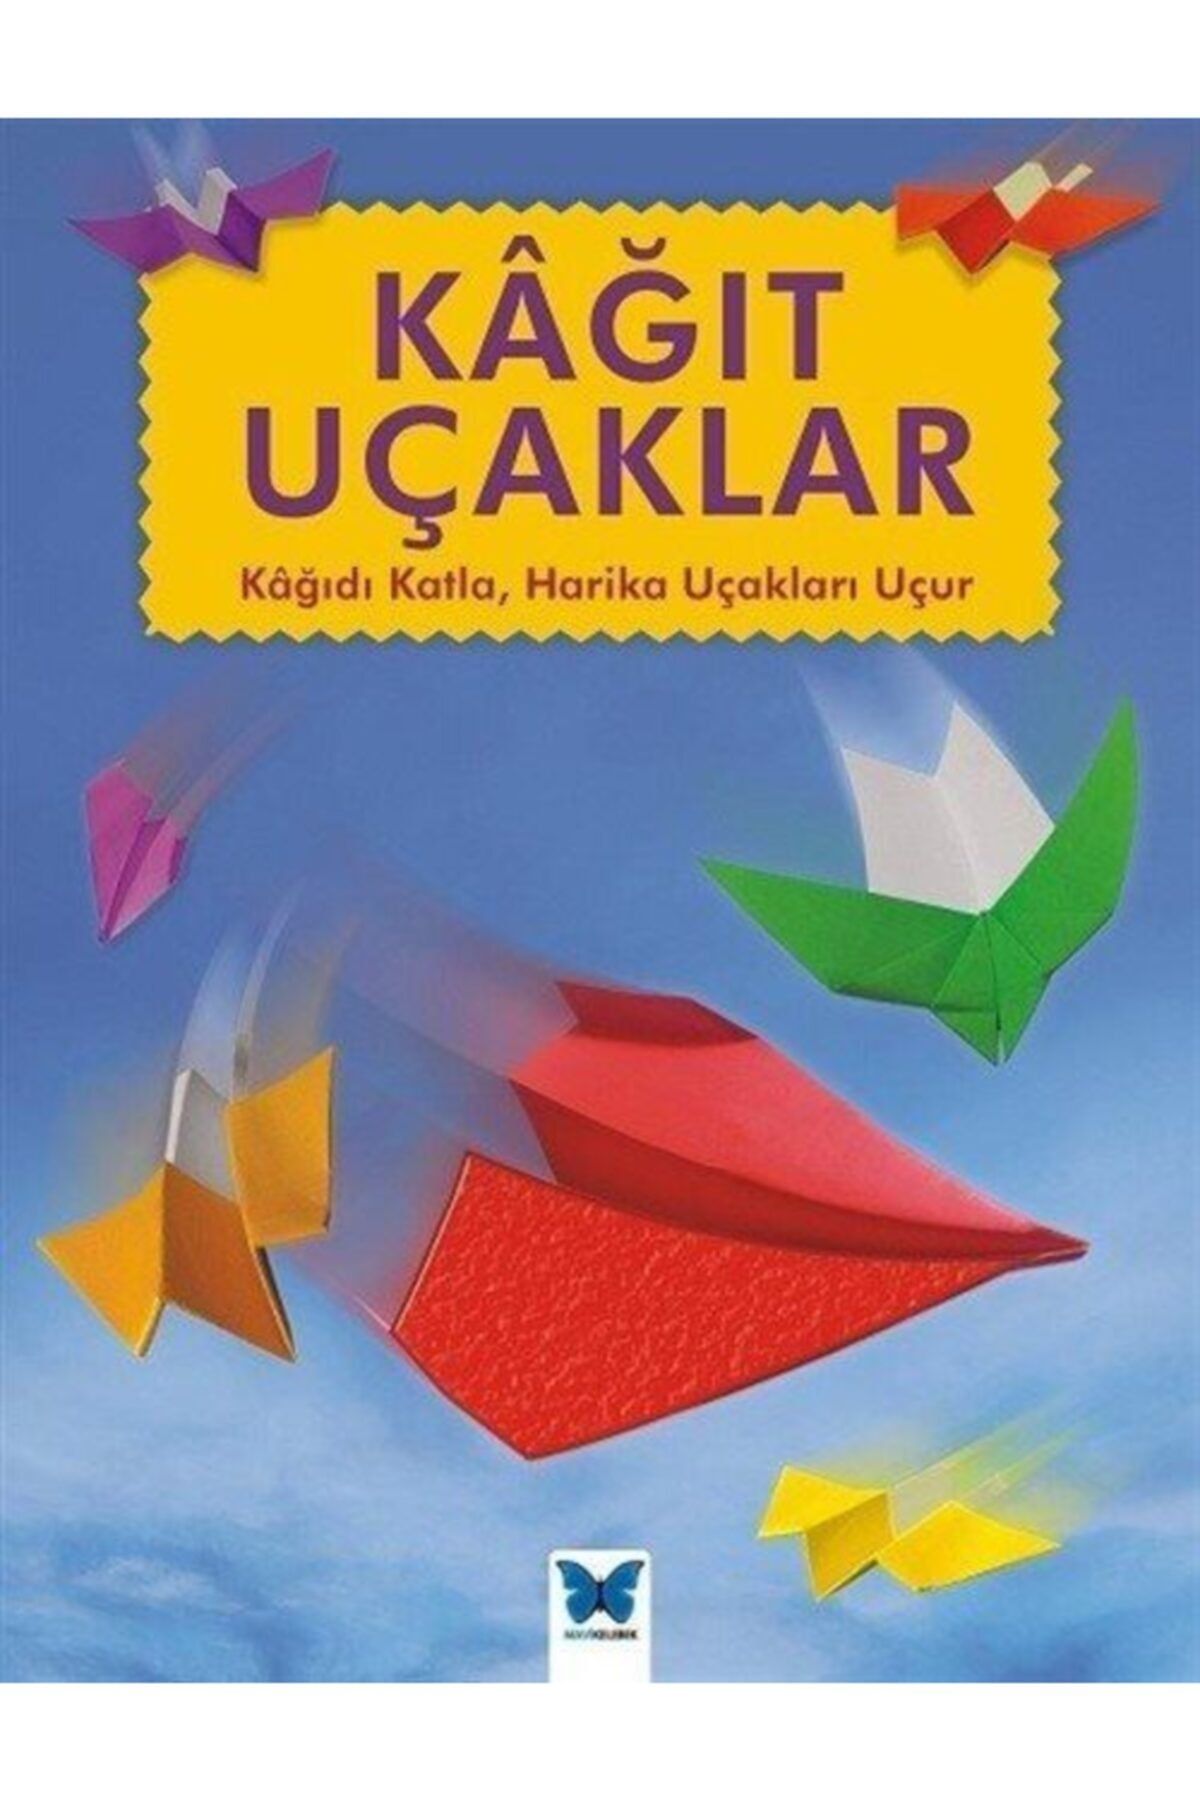 Mavi Kelebek Yayınları Kağıt Uçaklar & Kağıdı Katla, Harika Uçakları Uçur